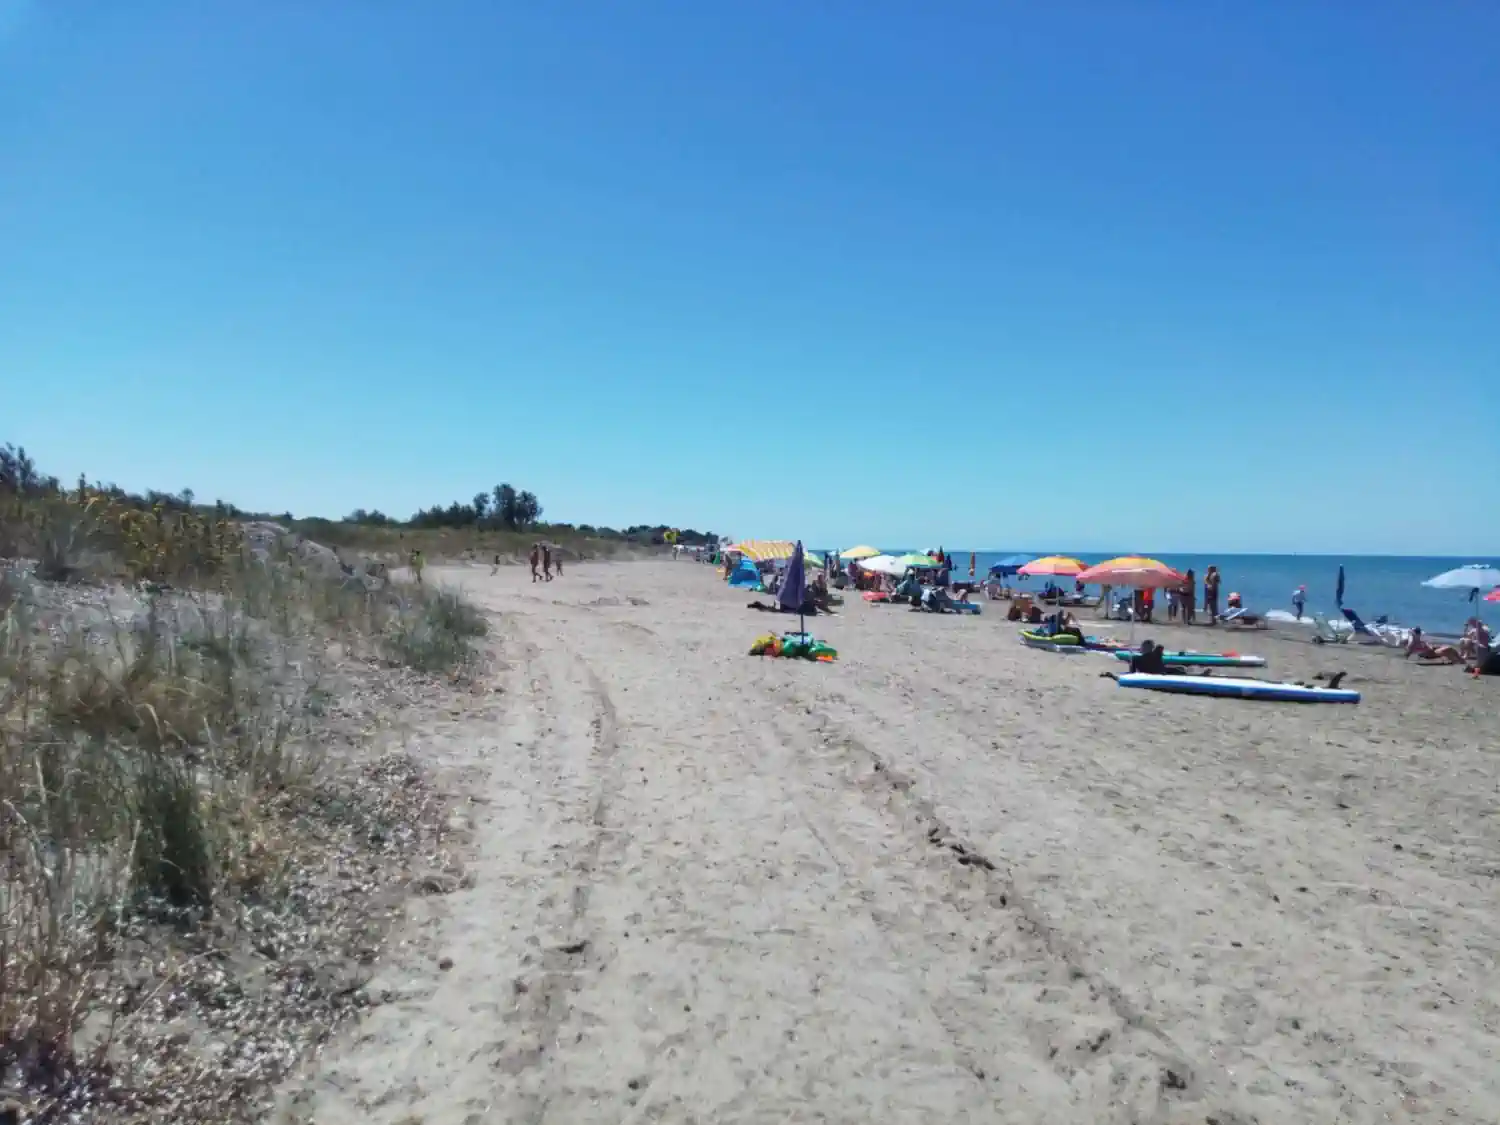 images/spiaggia/Campeggio-sul-mare-RadaEtrusca-dettaglio-spiaggia.webp#joomlaImage://local-images/spiaggia/Campeggio-sul-mare-RadaEtrusca-dettaglio-spiaggia.webp?width=1500&height=1125